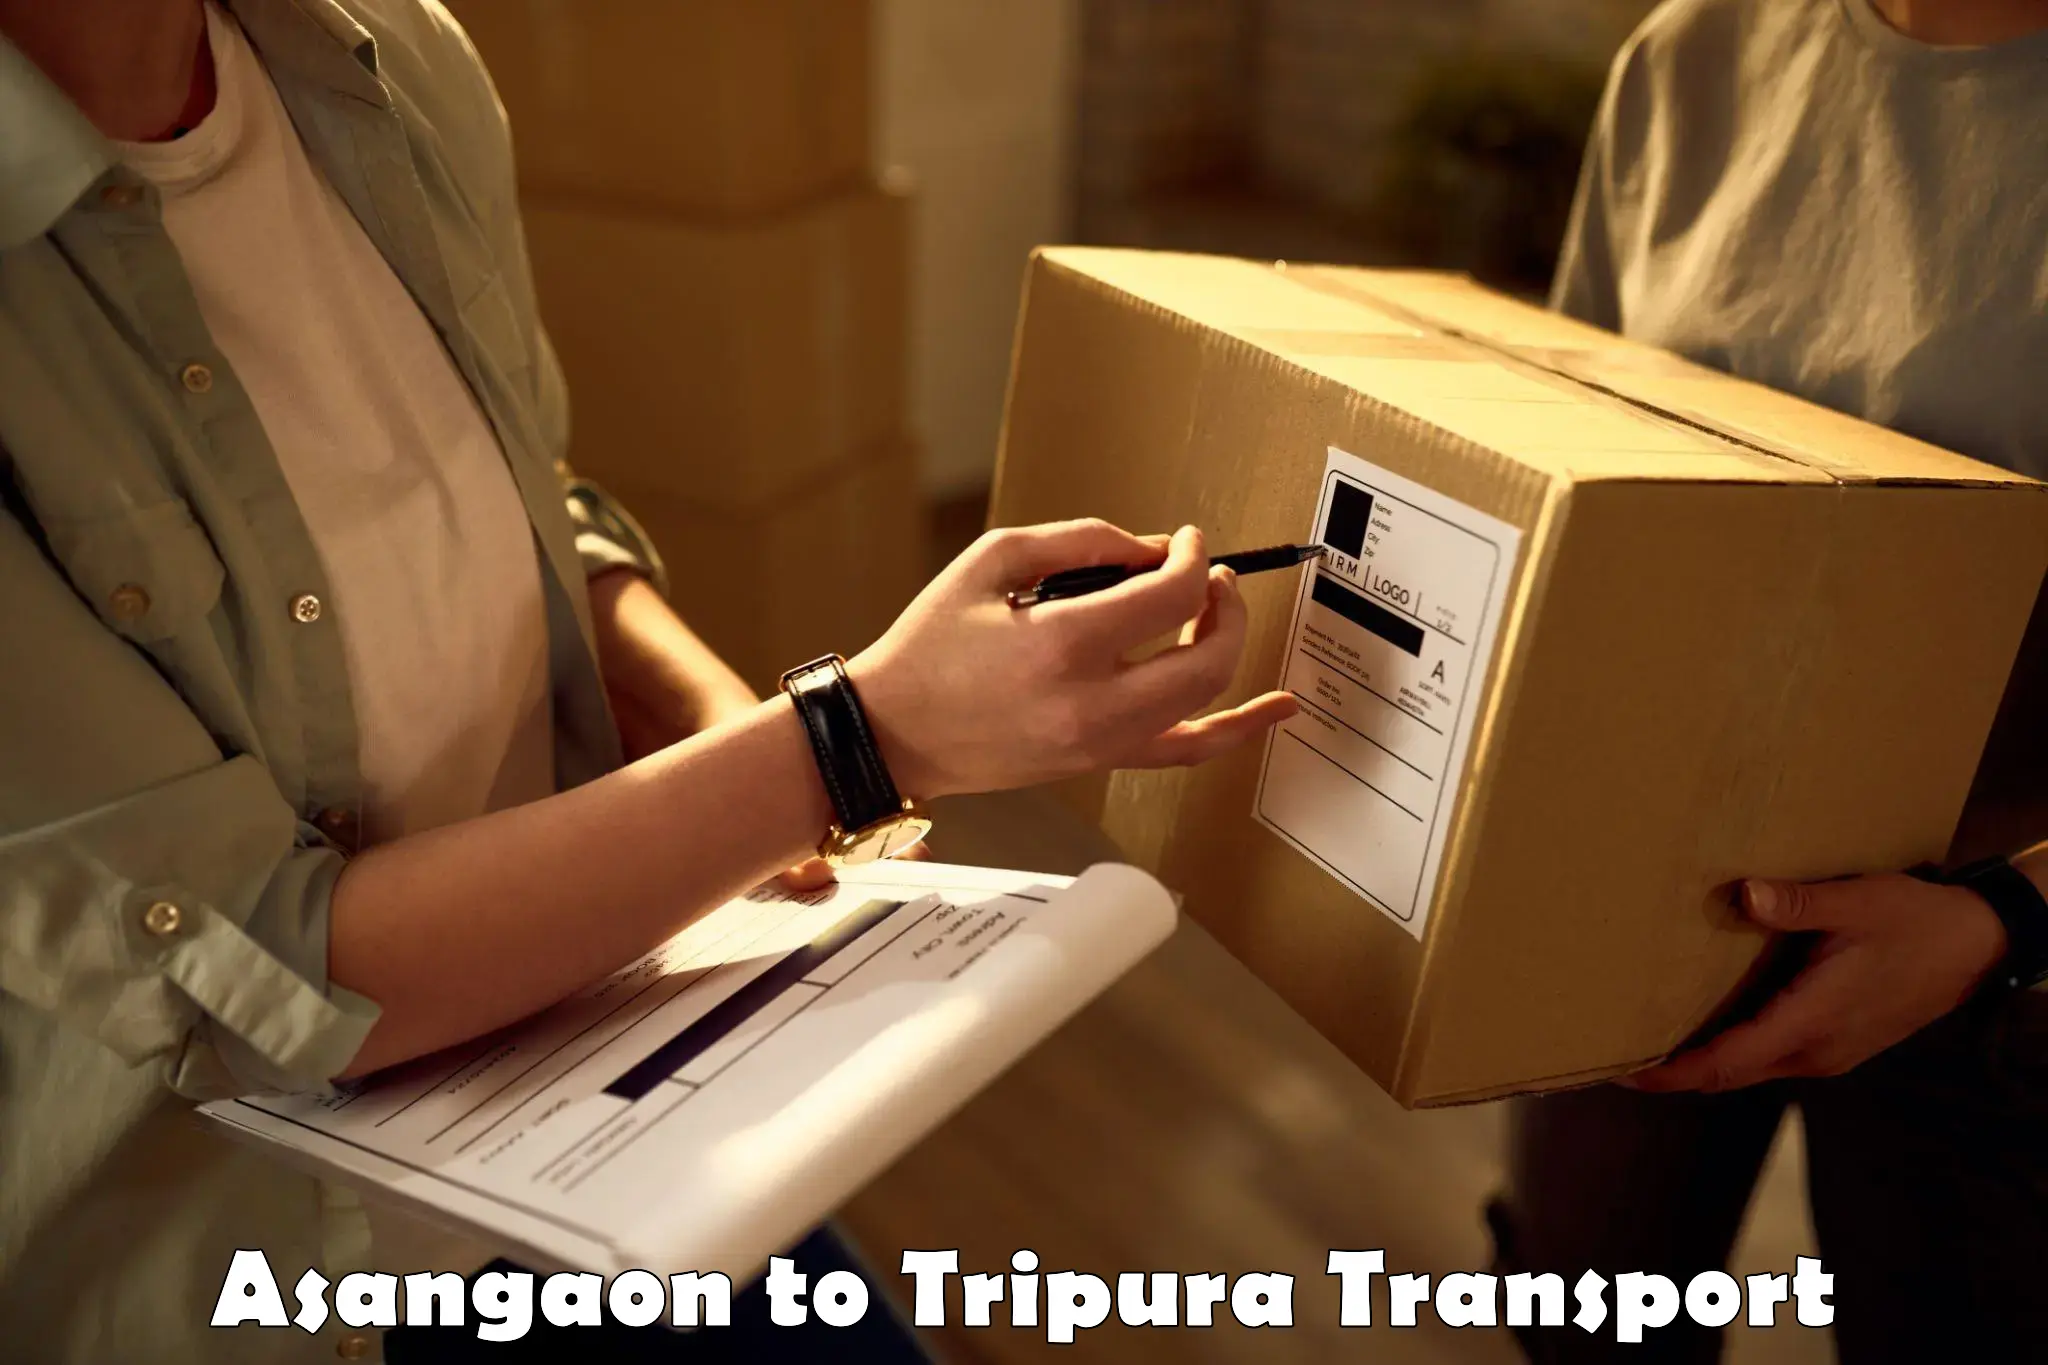 Online transport in Asangaon to Udaipur Tripura